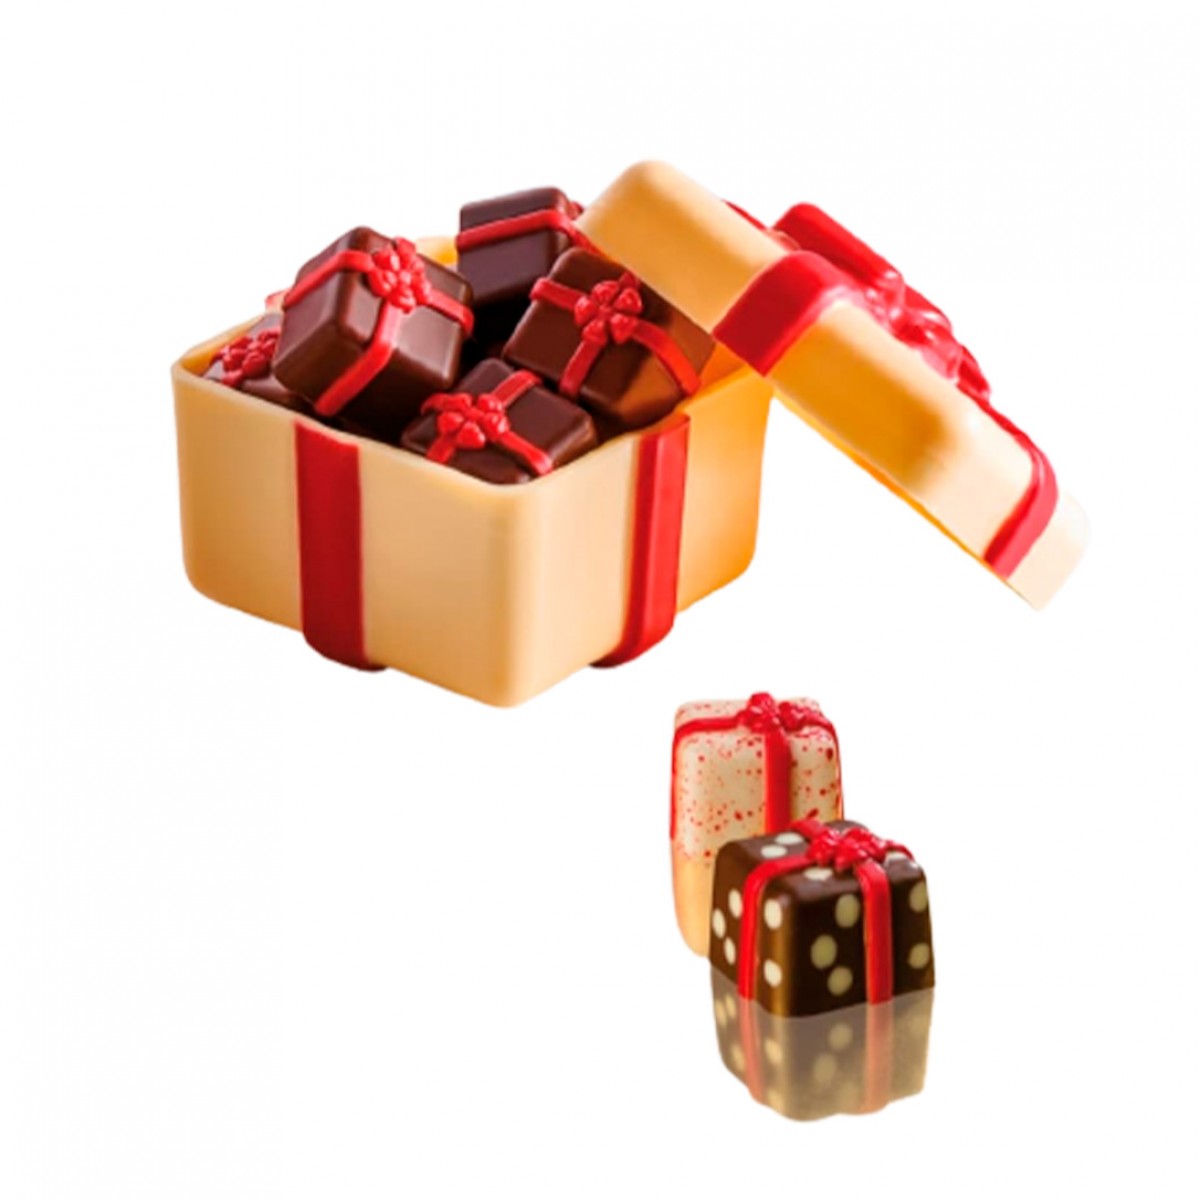 Подарочная коробка для шоколада Ёлочки ПП — купить в городе Воронеж, цена, фото — КанцОптТорг